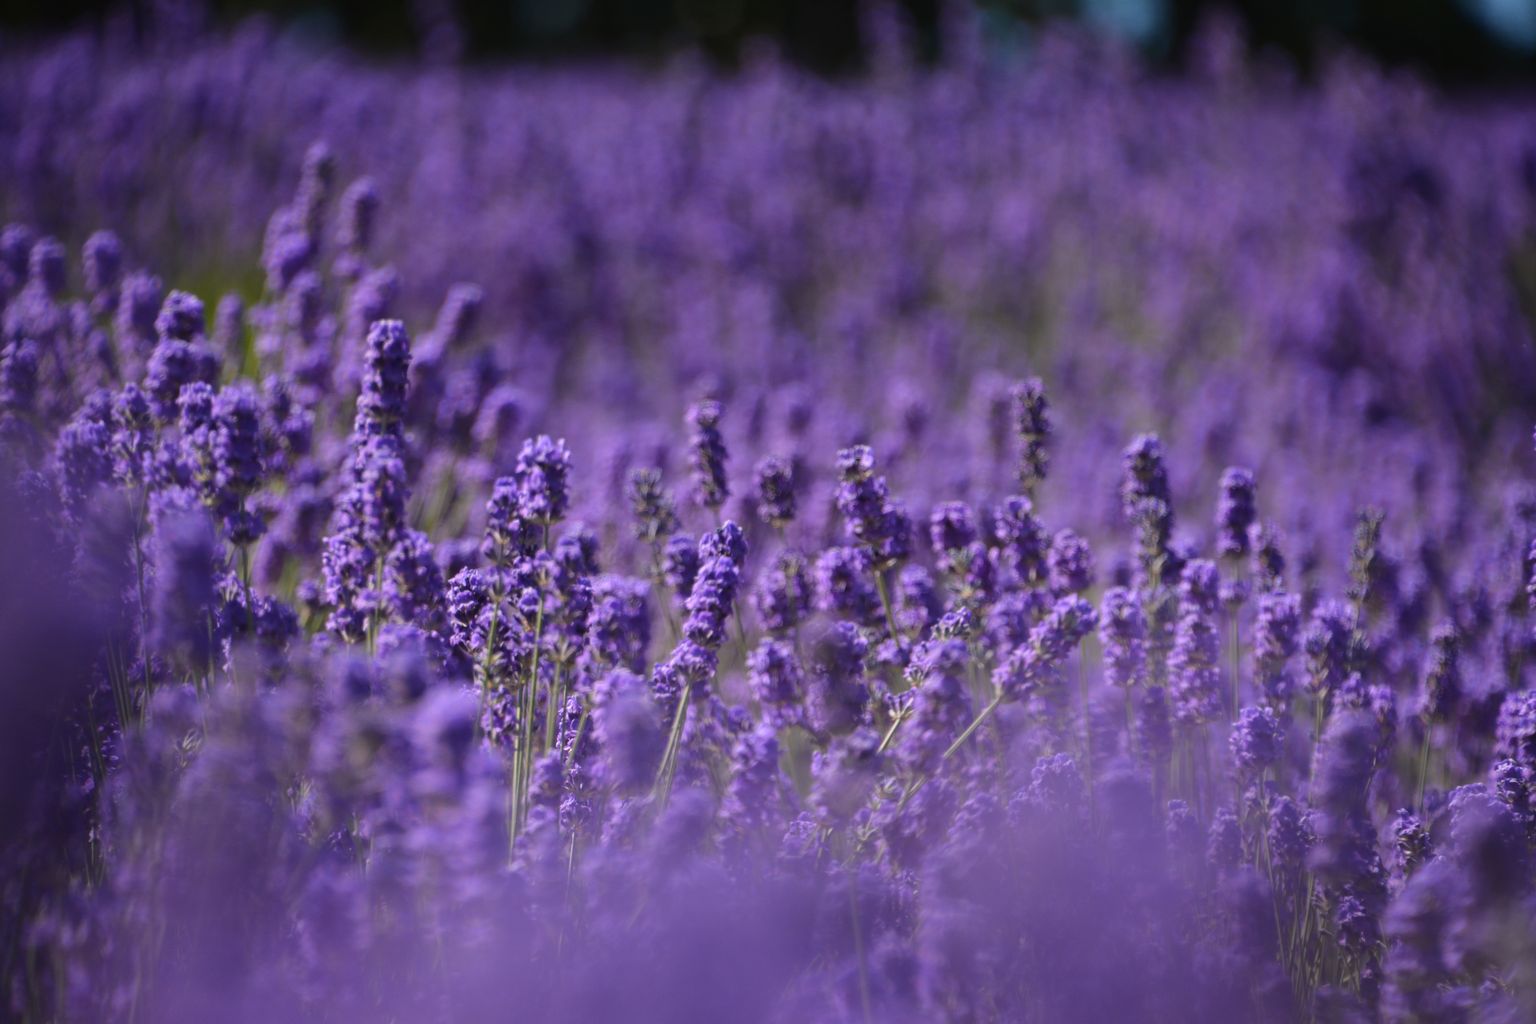 Lõhnataimena tuntud lavendlist saab lavendliõli, lõhnavett ja salvi. Lehti ja õisi kasutatakse ka toitude maitsestamisel. Värsked noored võrsed sobivad rohelistesse salatitesse, suppidesse, praetud kala ja liha juurde. Foto on illustreeriv.